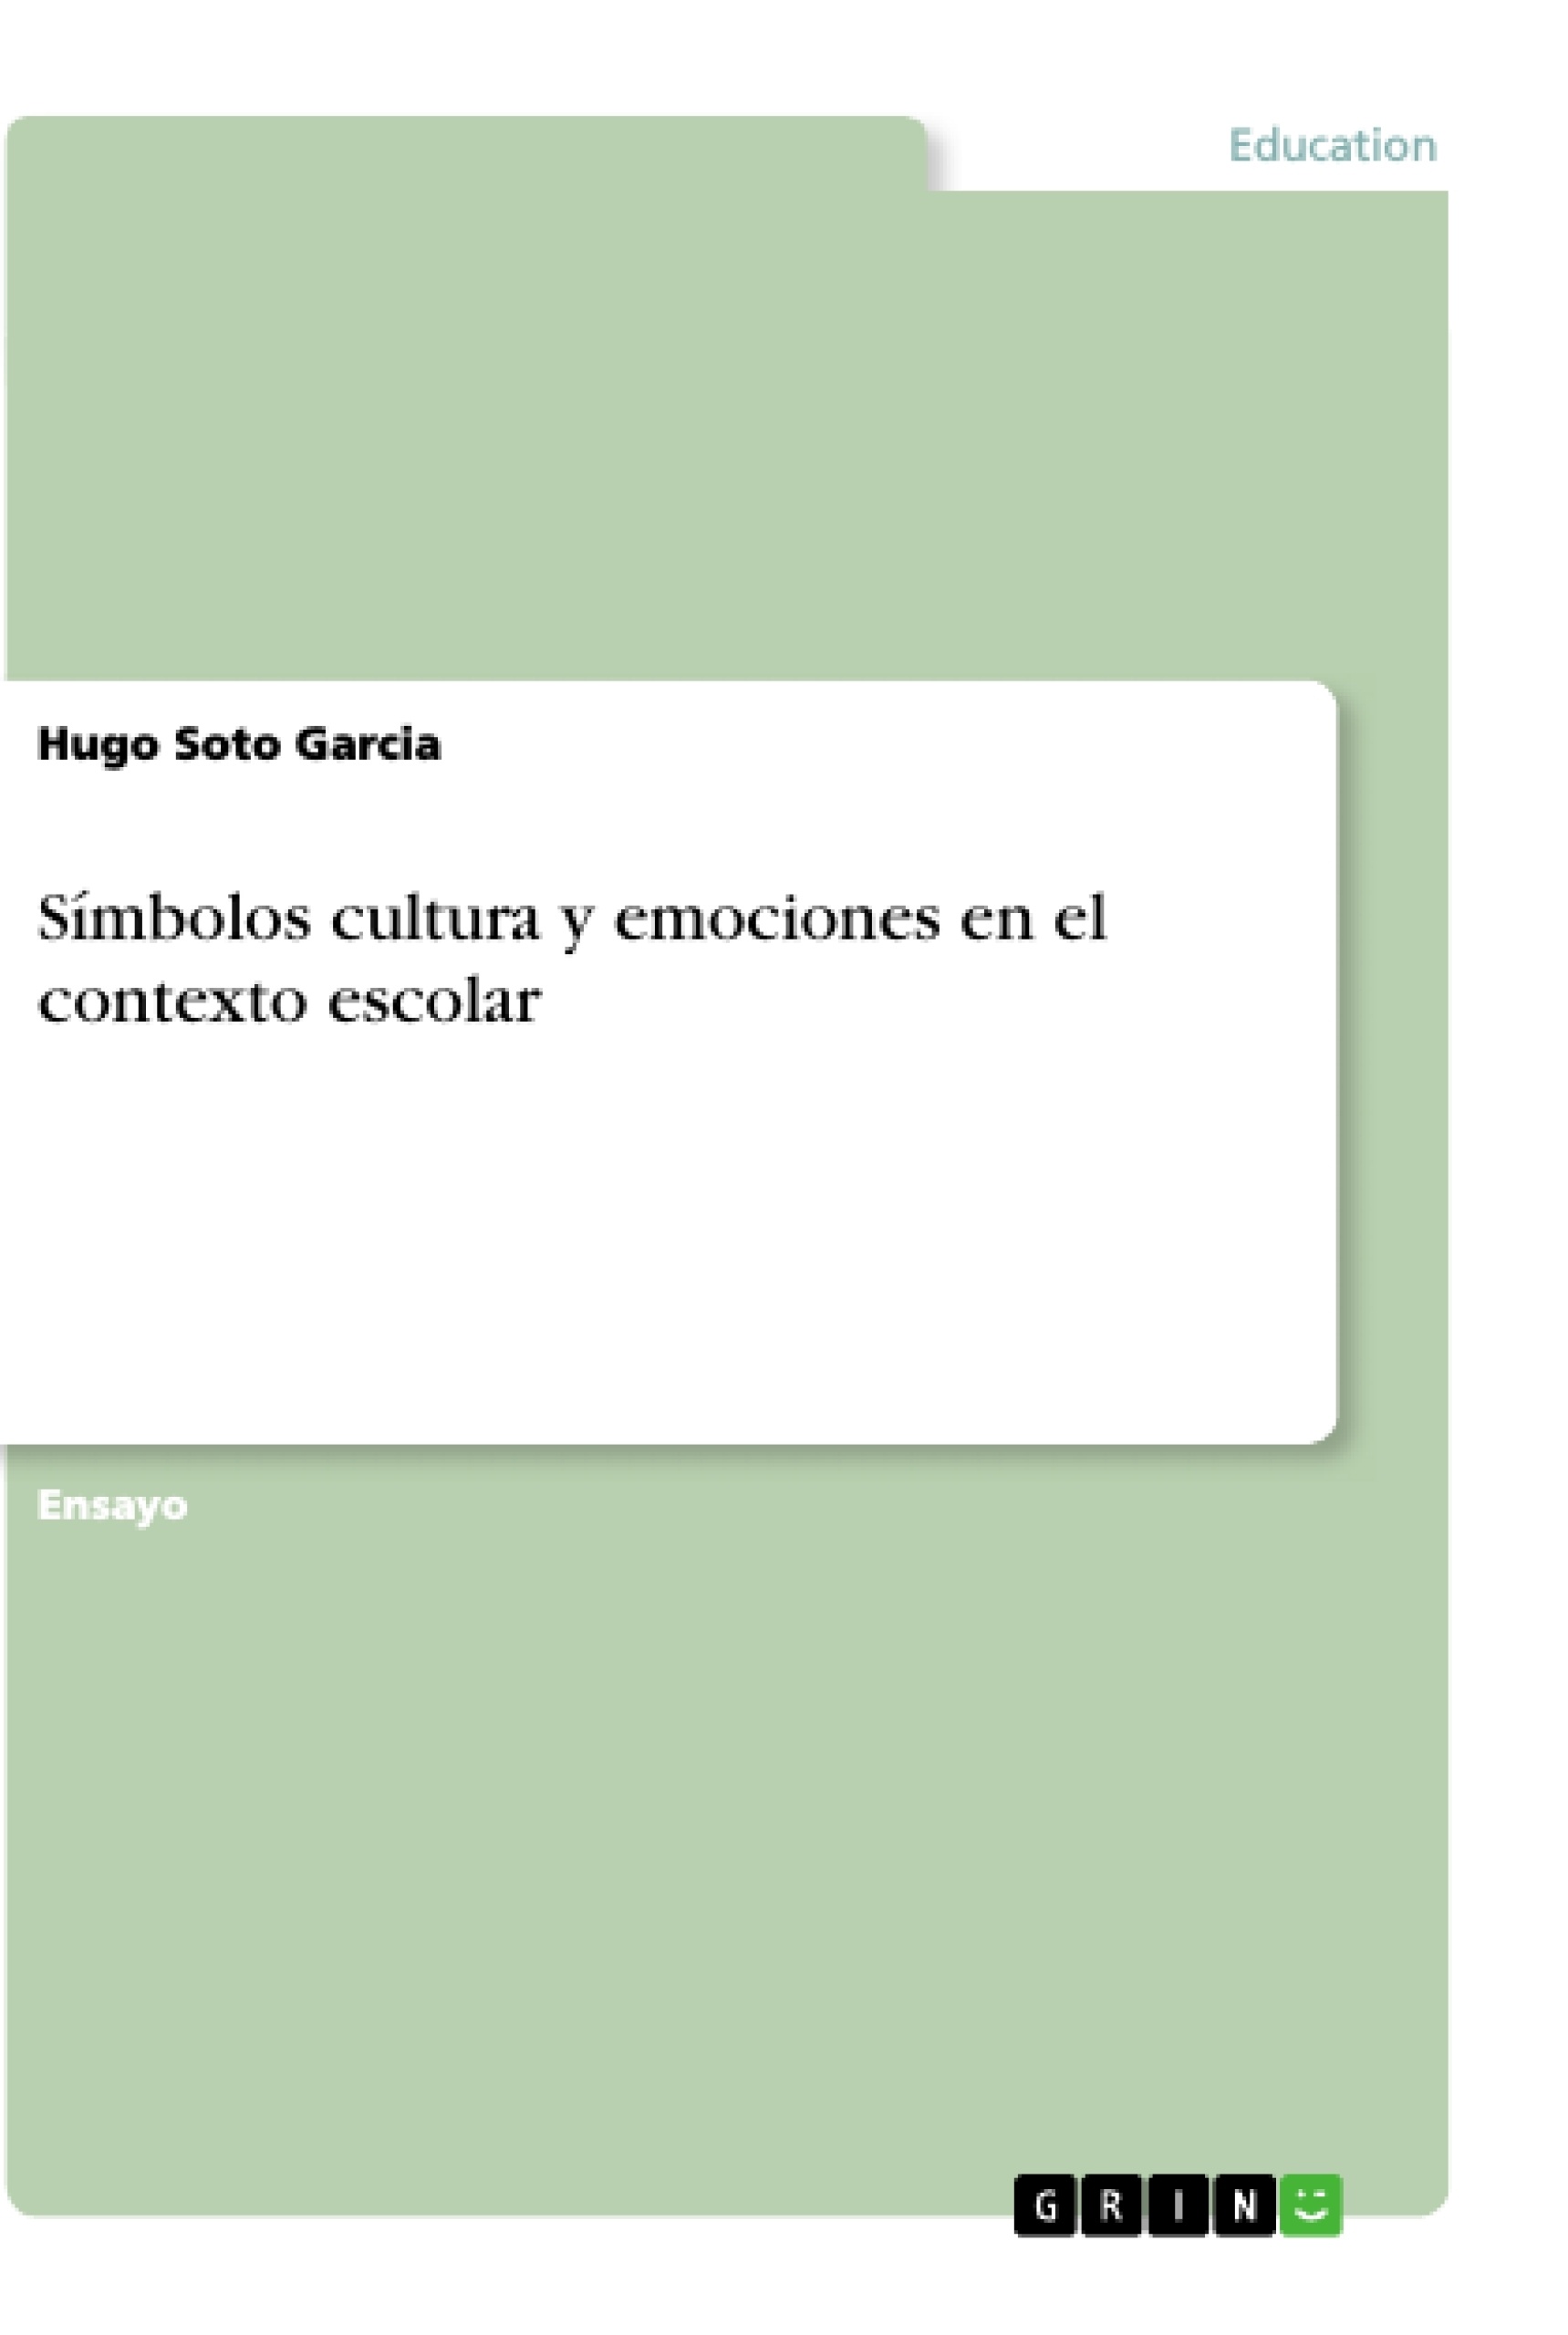 Titel: Símbolos cultura y emociones en el contexto escolar